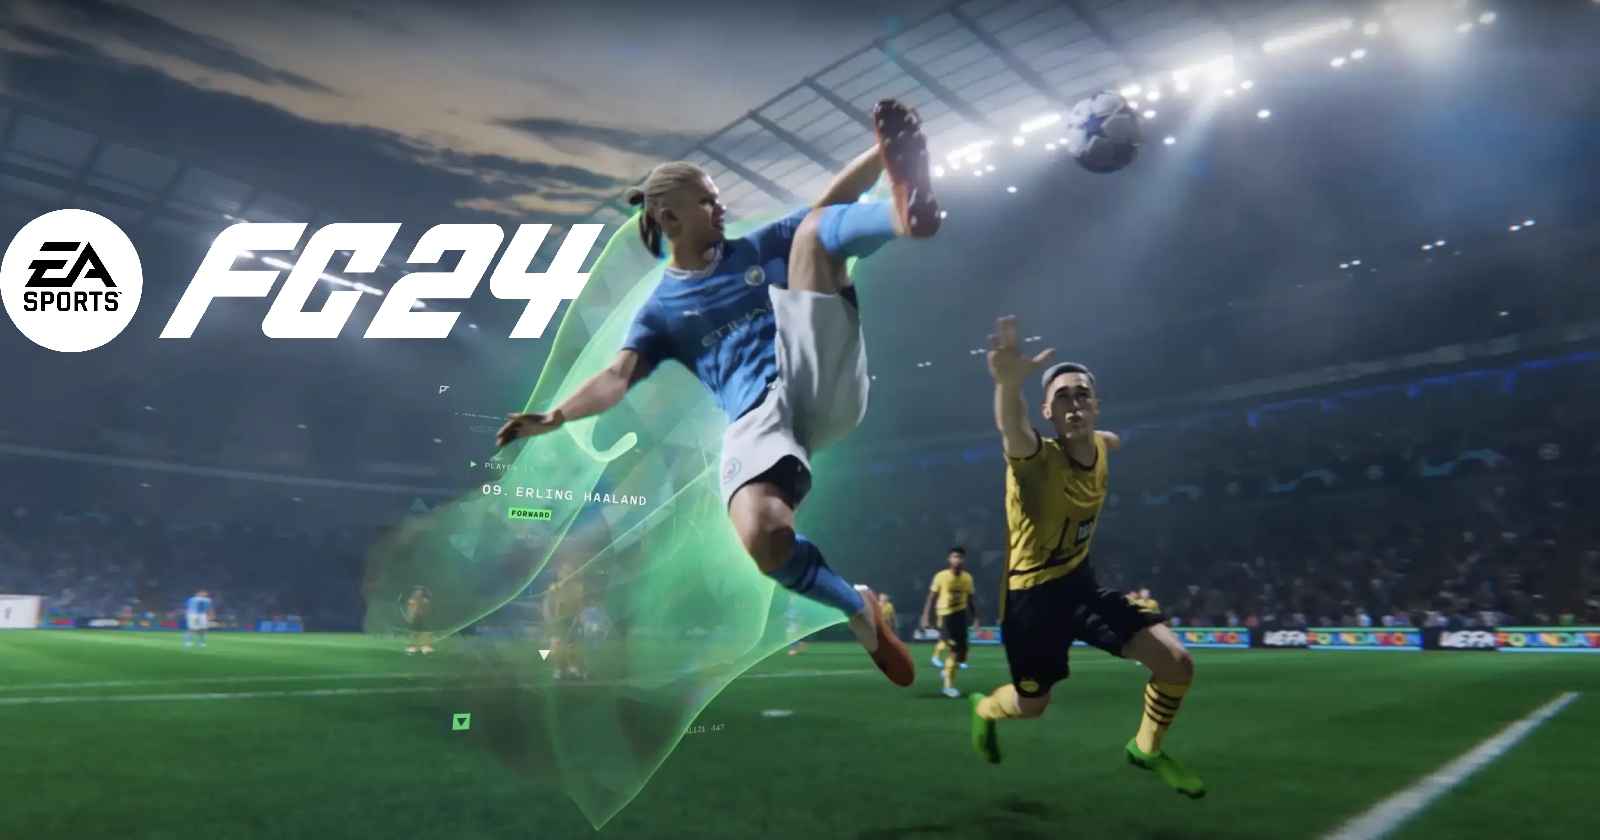 EA Sports is all smiles: FC 24 has taken flight!